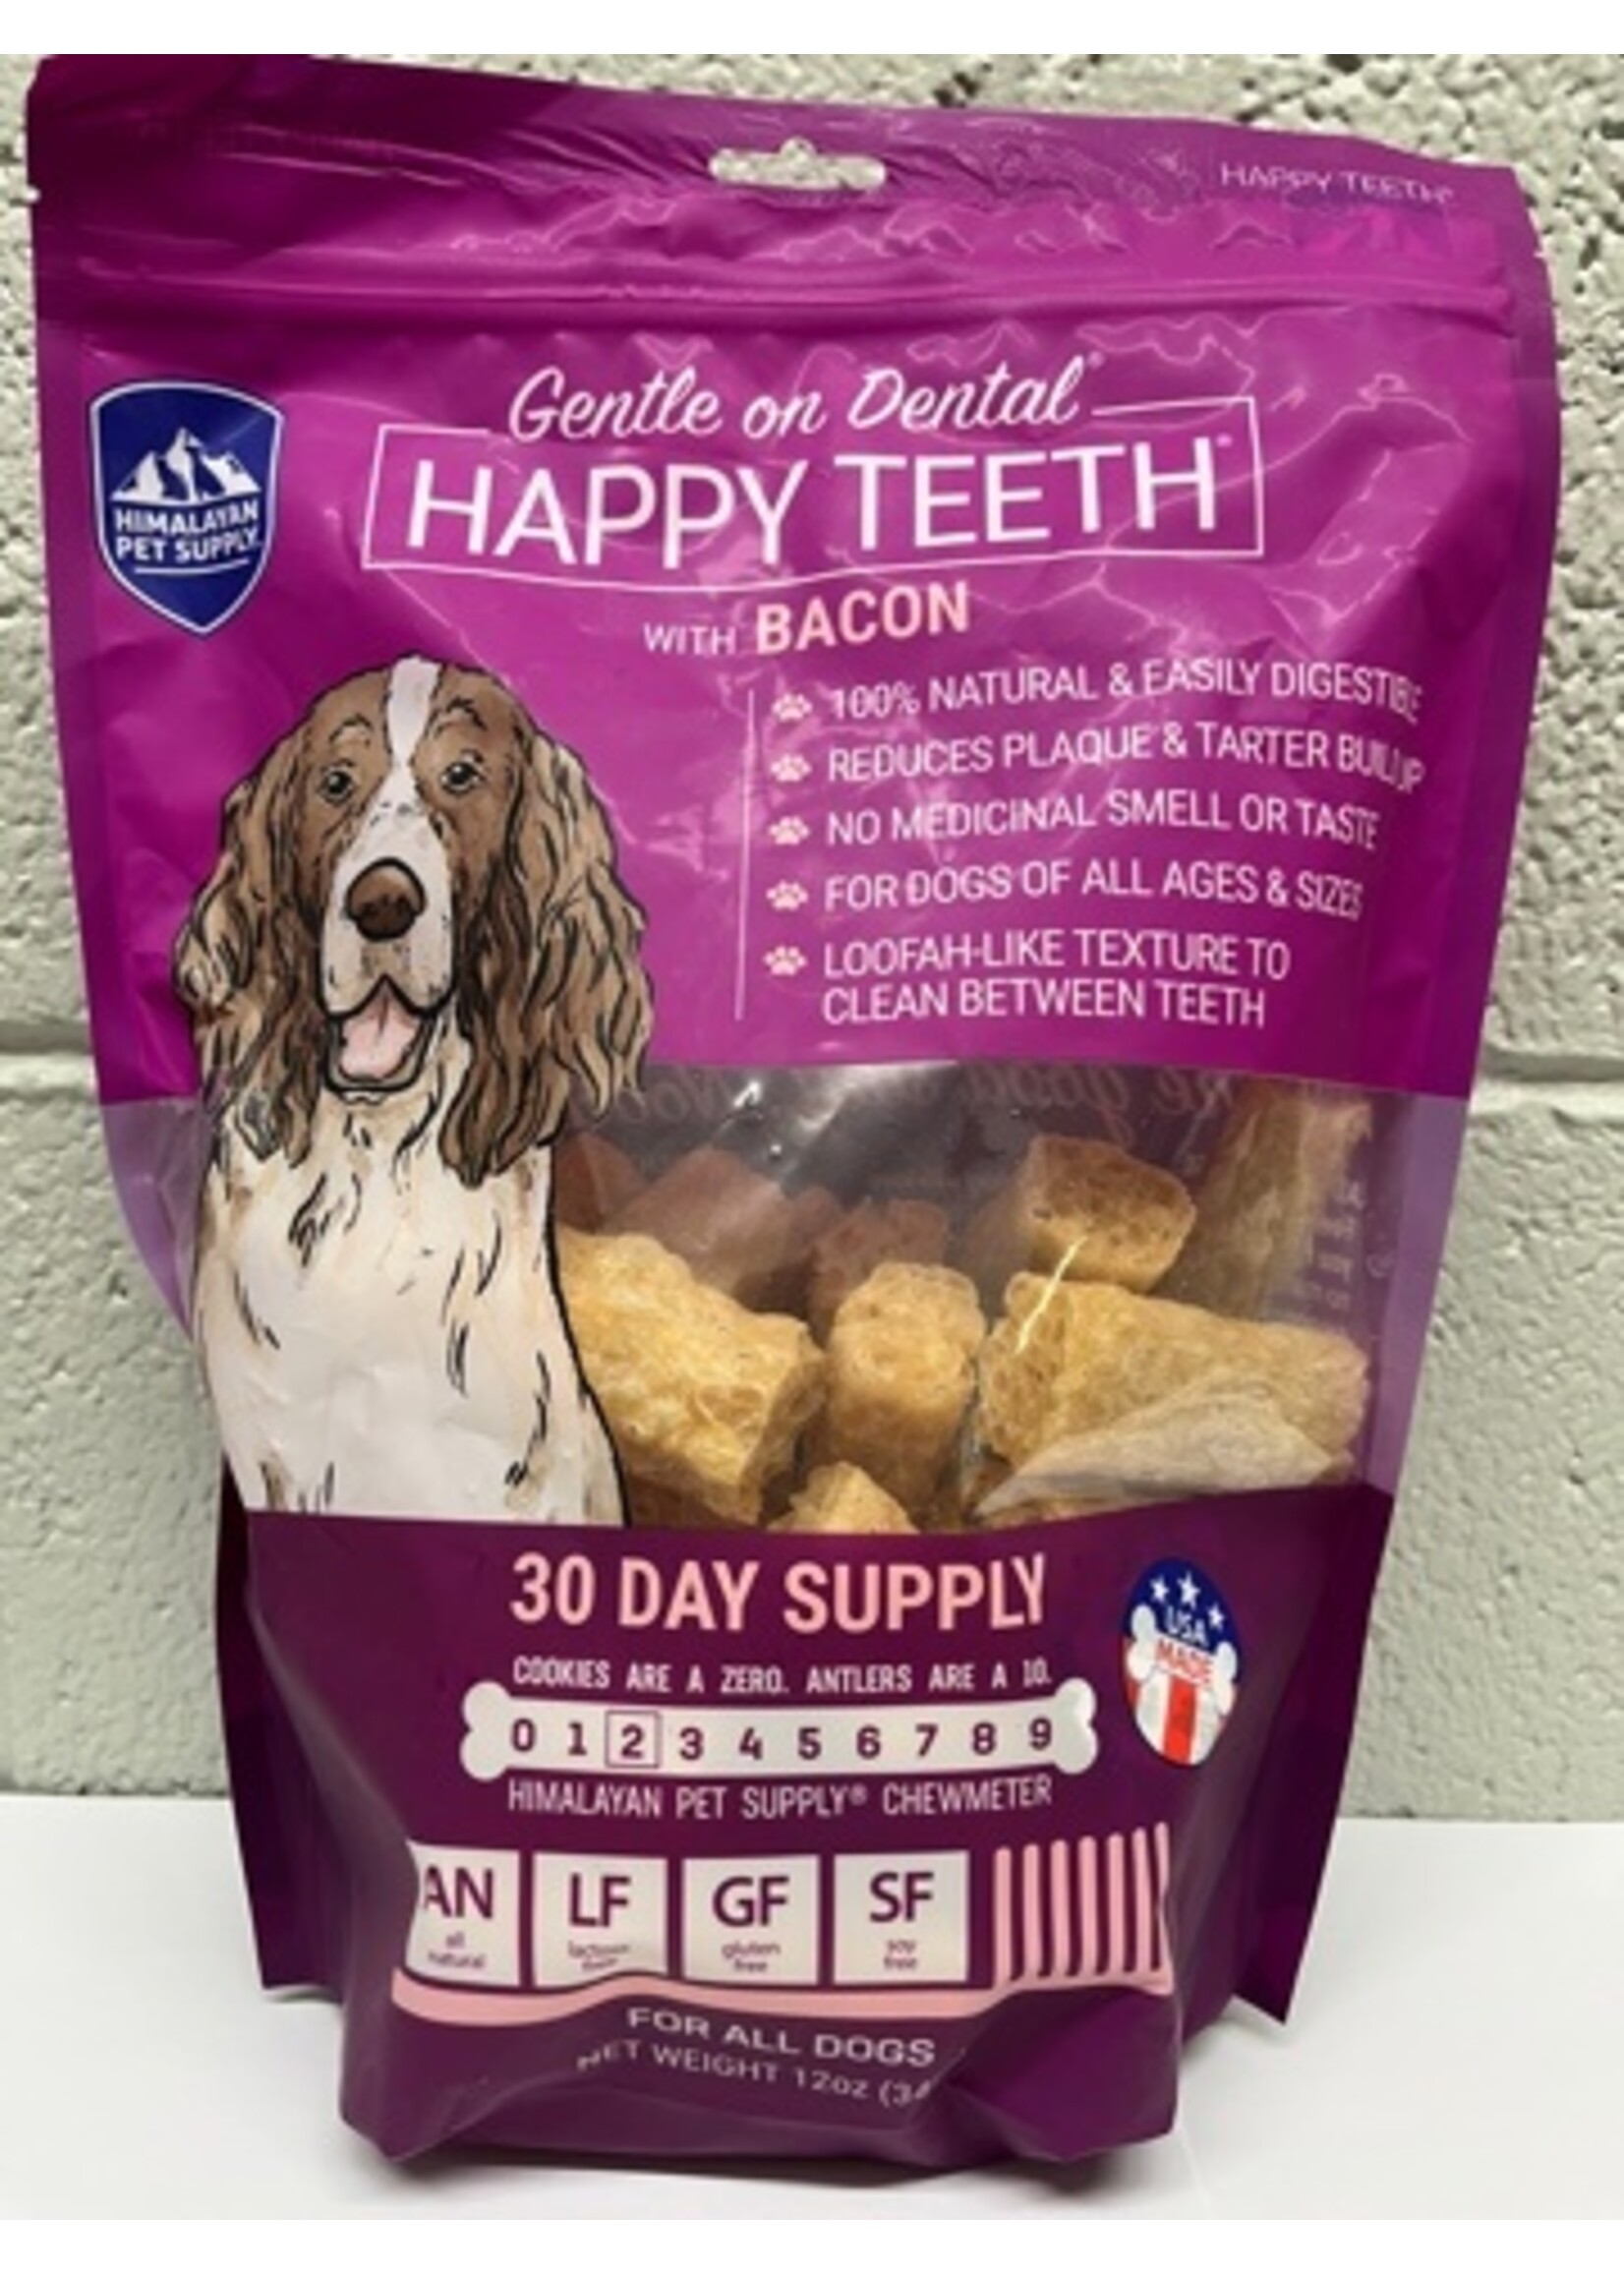 Himalayan Dog Chew Himalayan Dog Happy Teeth Gentle on Dental 12oz